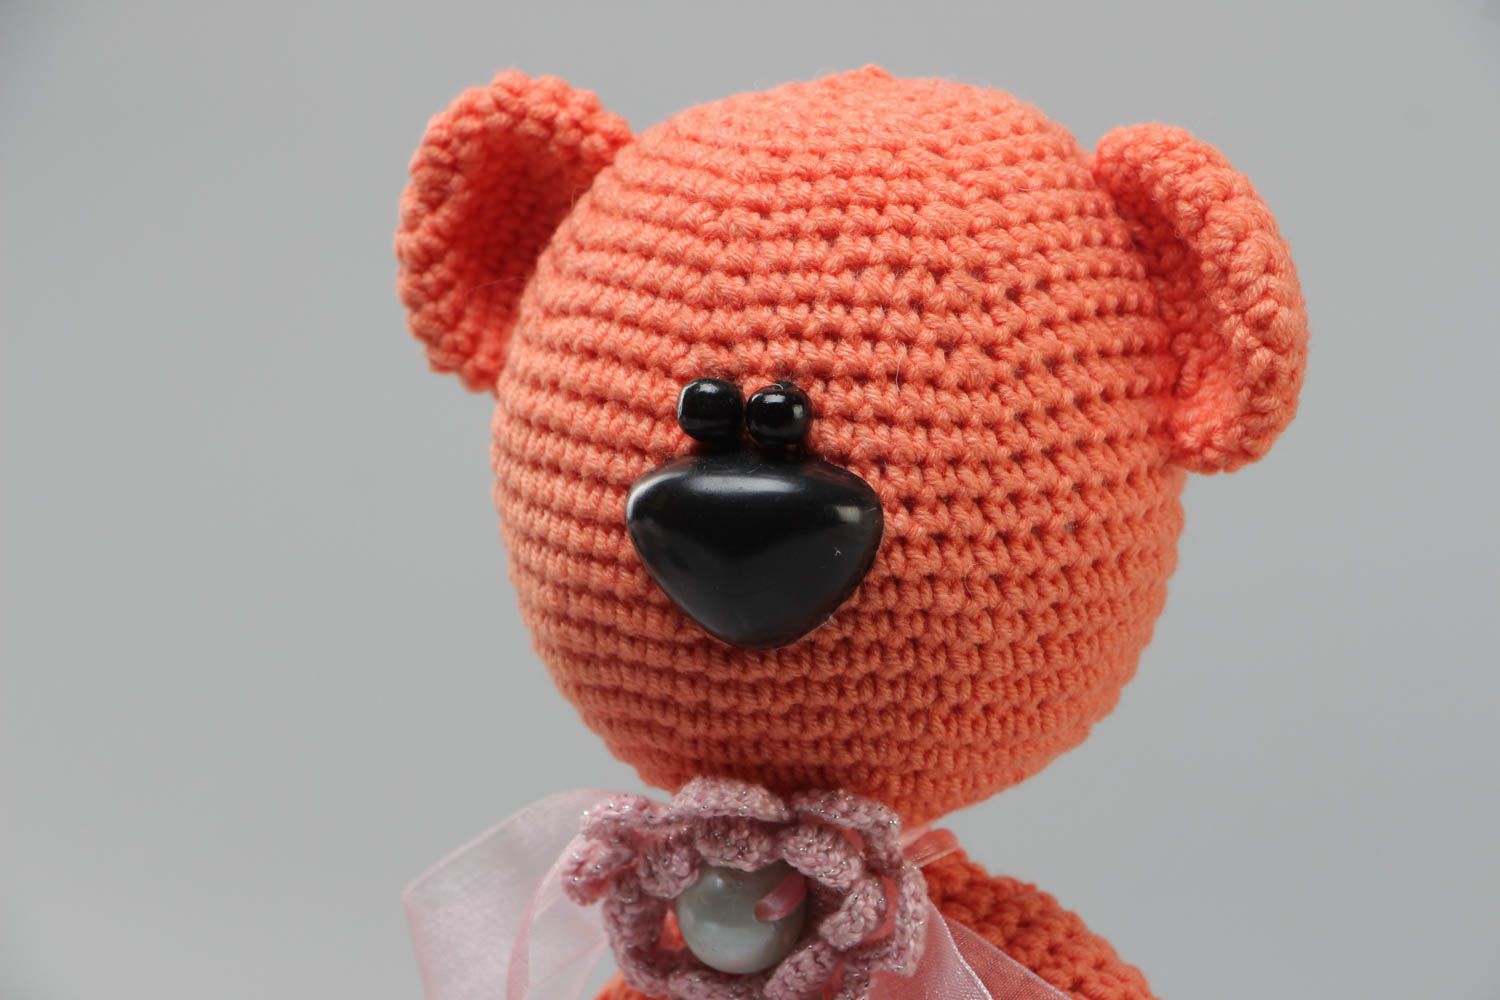 Вязаная игрушка крючком из акриловых ниток мягкая ручной работы Медведь розовый фото 3